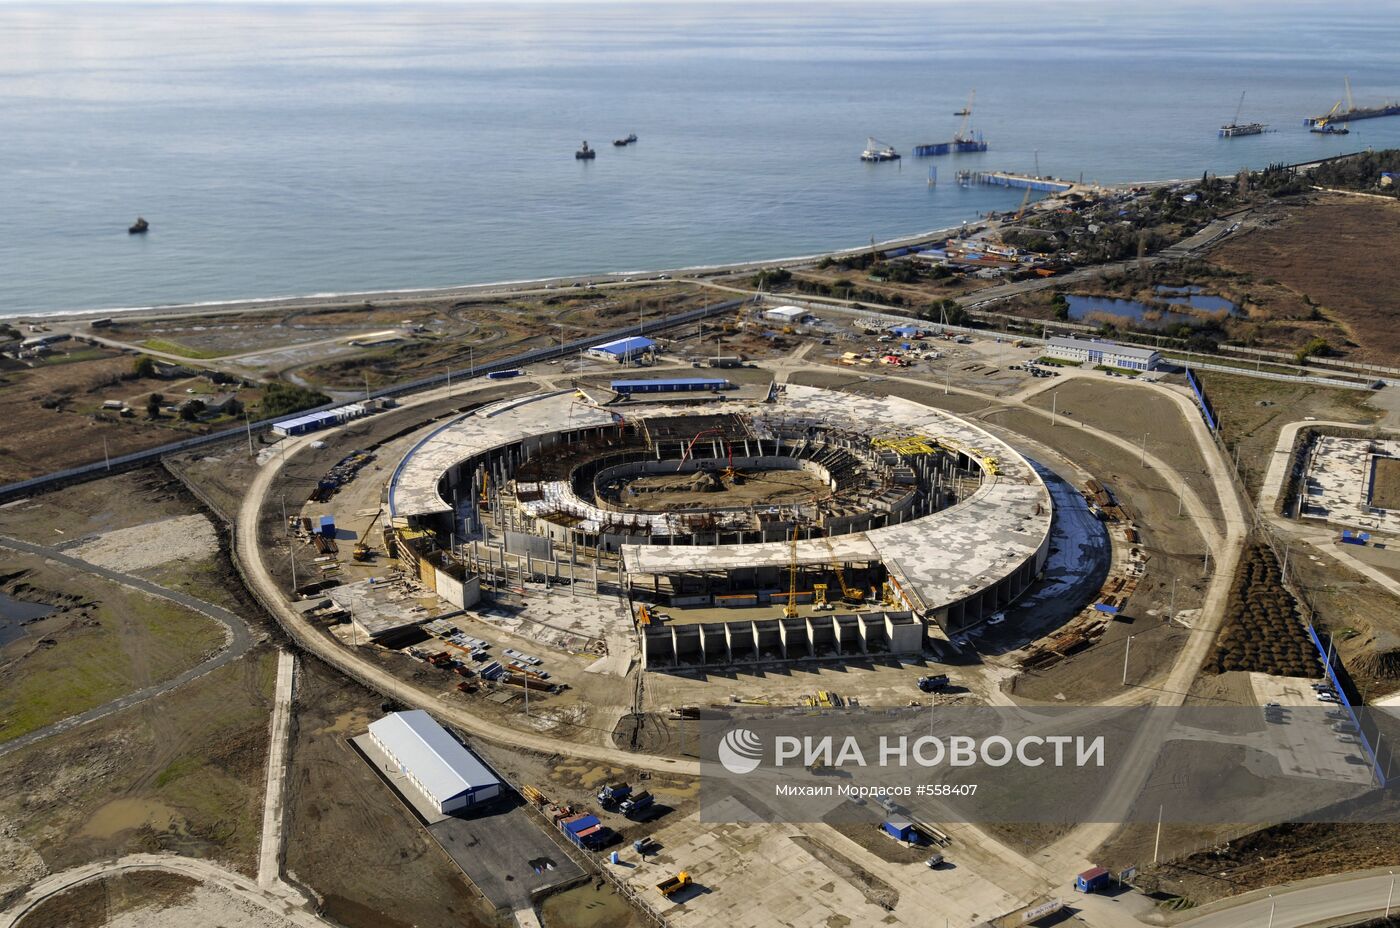 Строительство олимпийских объектов в Сочи. Вид с вертолета